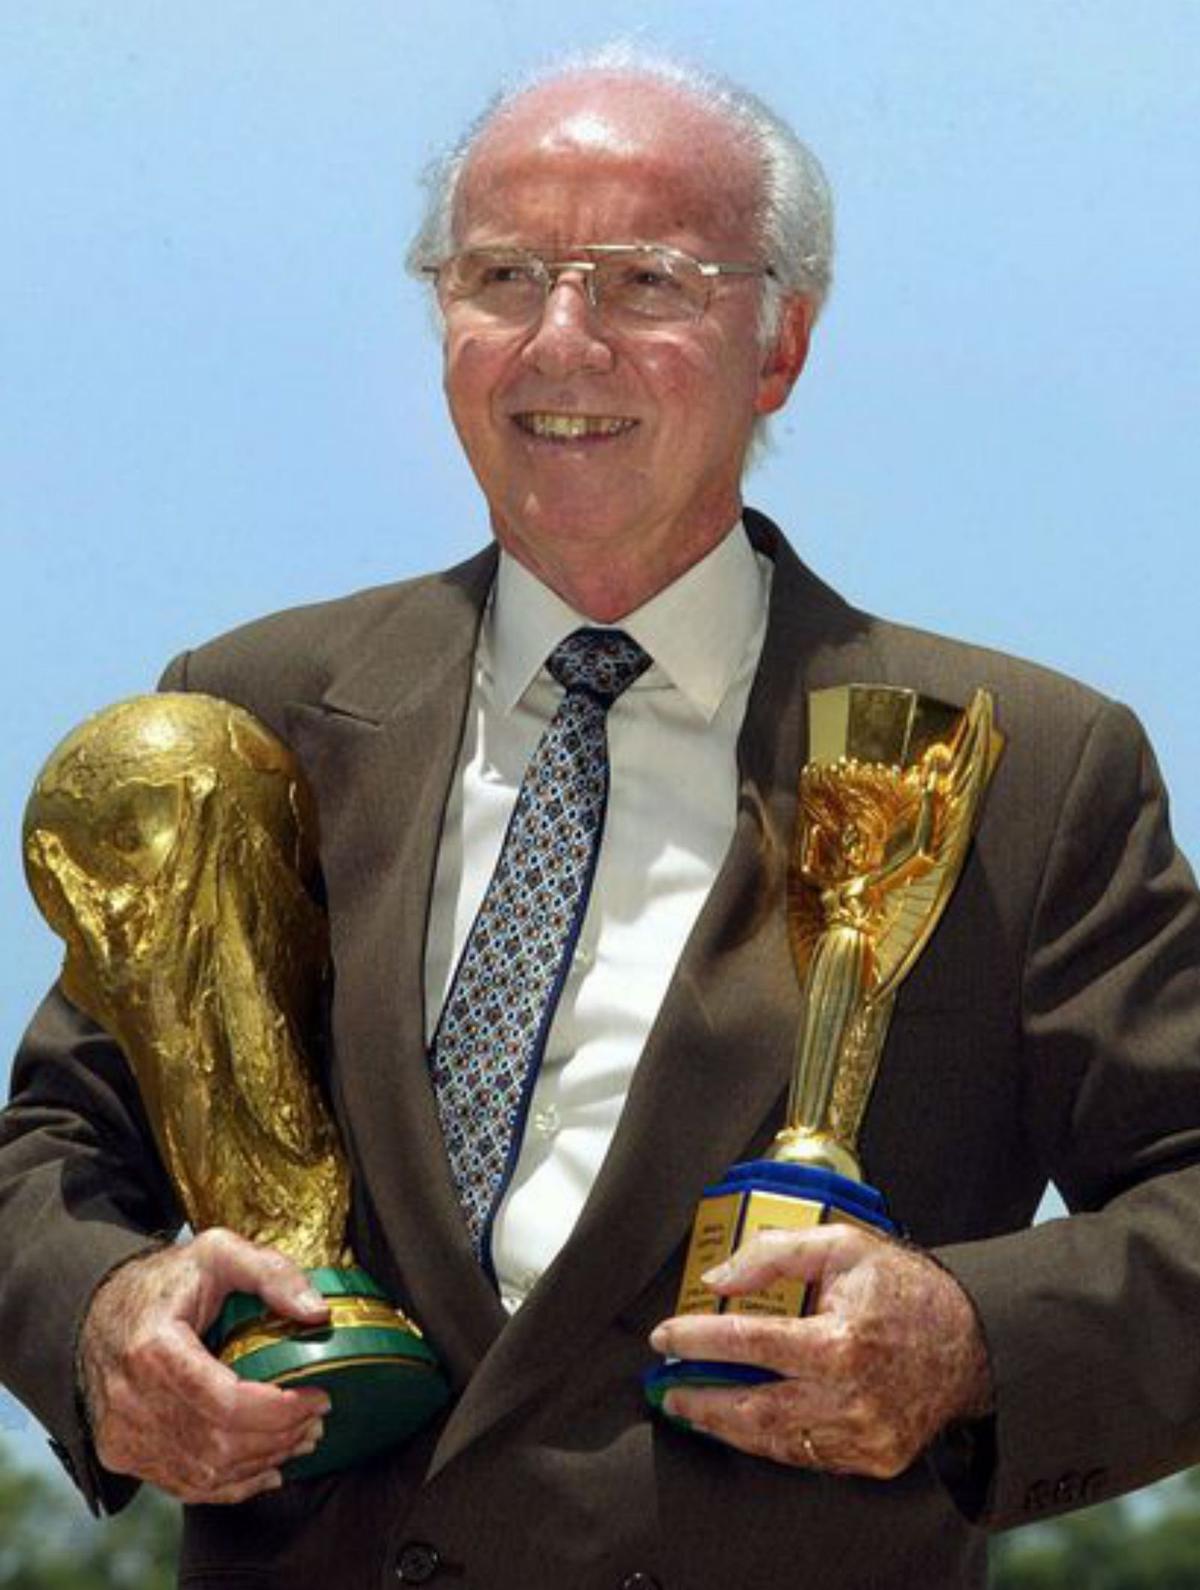 Mor als 92 anys Mário ‘Lobo’ Zagallo, llegenda del futbol brasiler